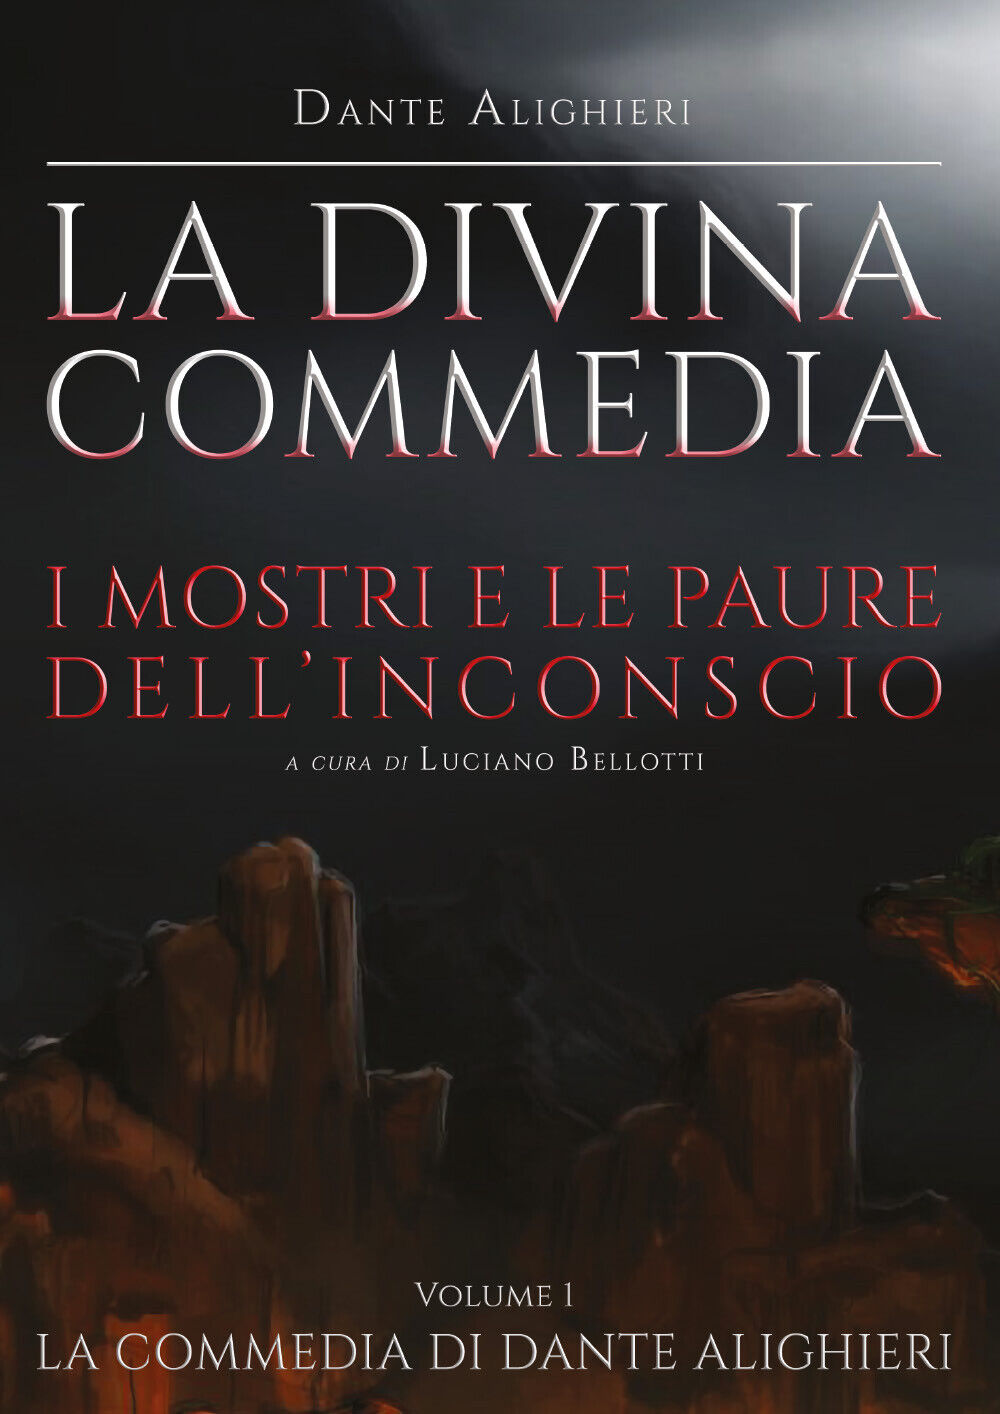 La Divina Commedia - Inferno di Dante Alighieri,  2021,  Youcanprint